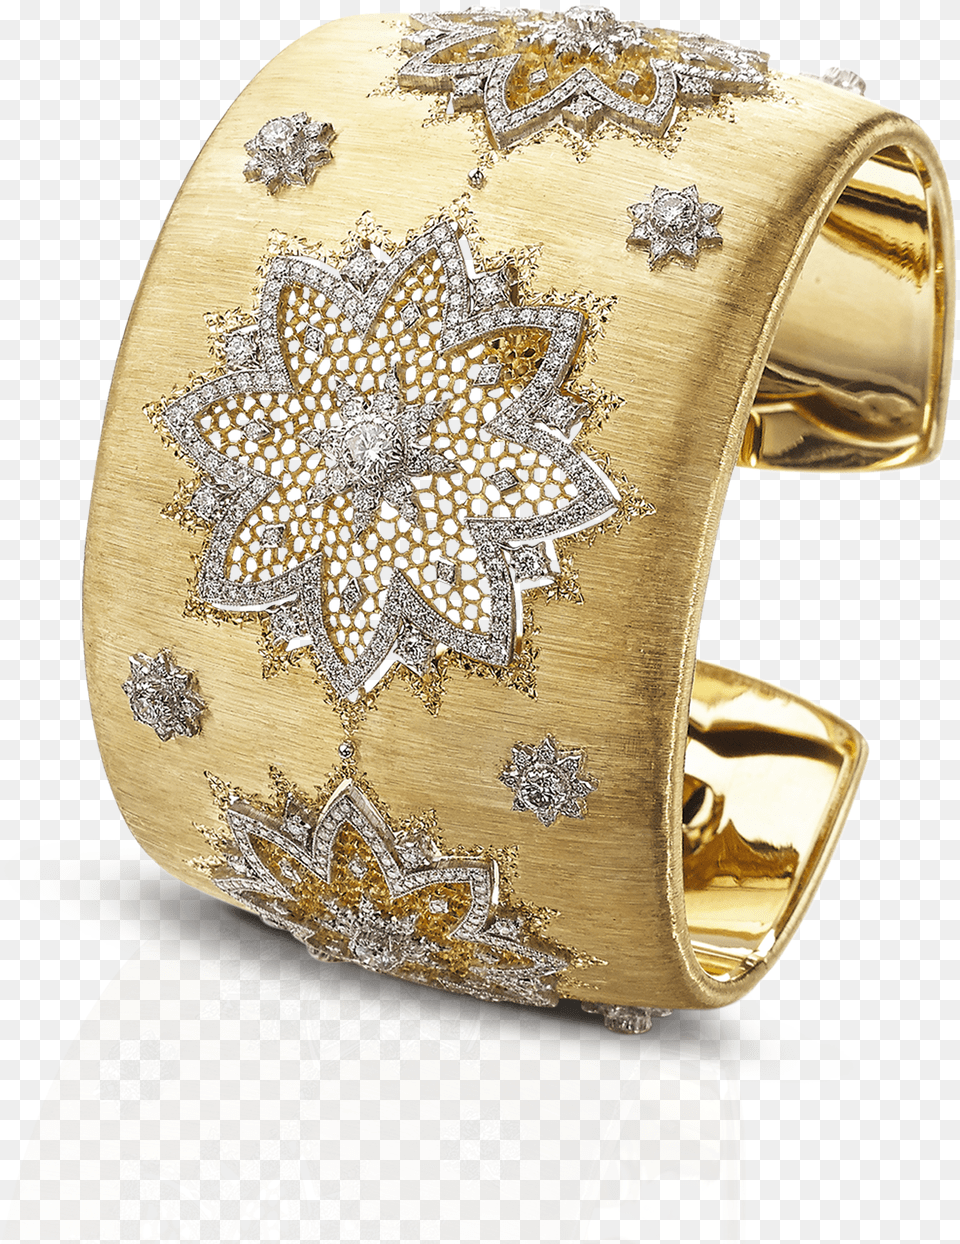 Morgana Bracelet Unica Official Buccellati Website Buccellati Bangle Gold, Cuff, Accessories, Jewelry, Ornament Free Png